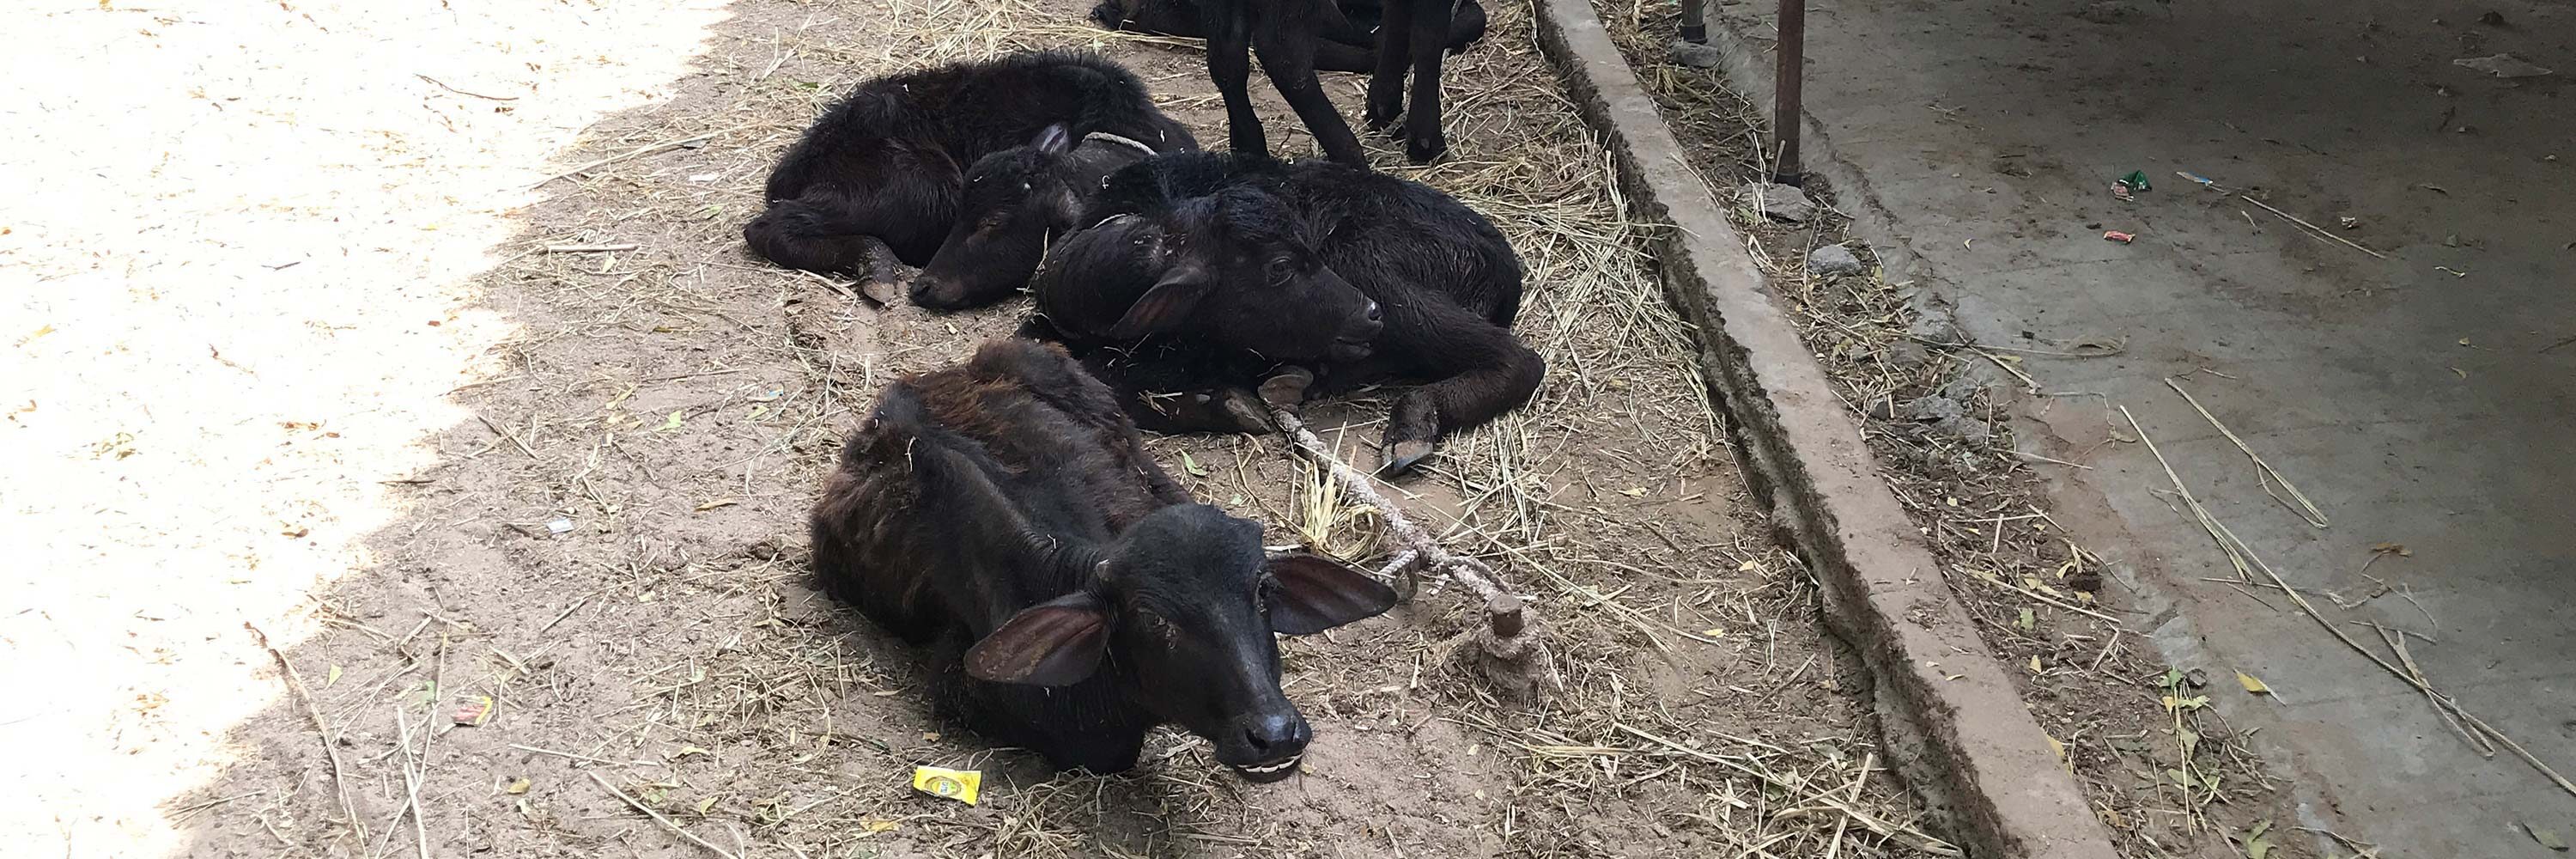 crías búfalos macho en India